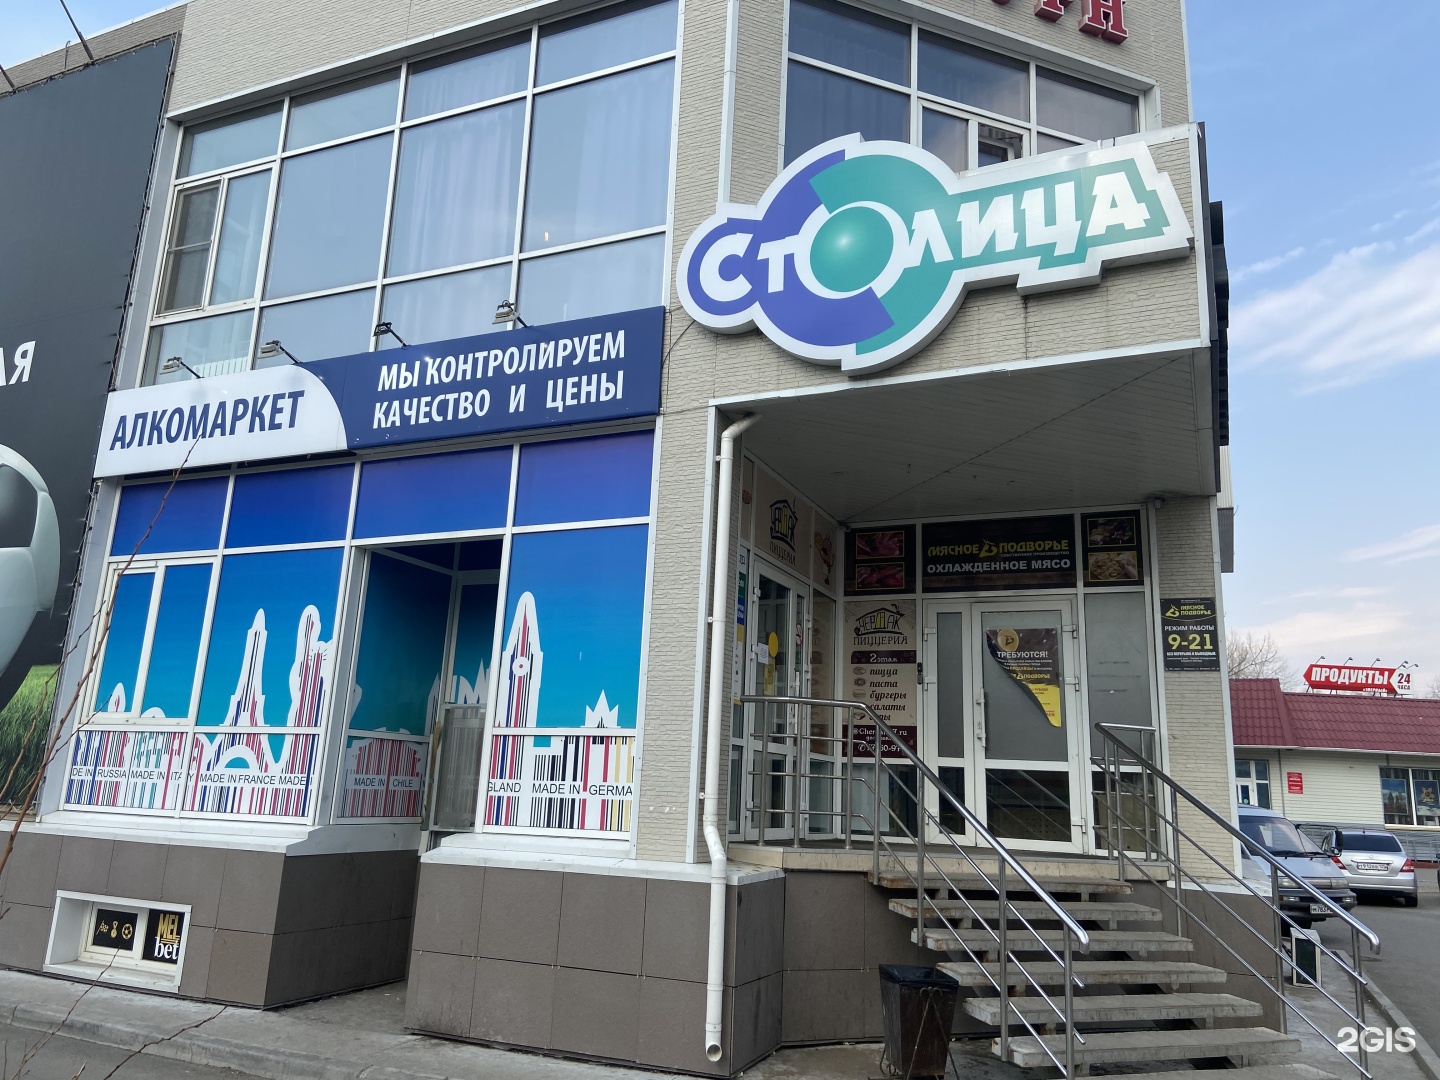 Столица Хабаровск Интернет Магазин